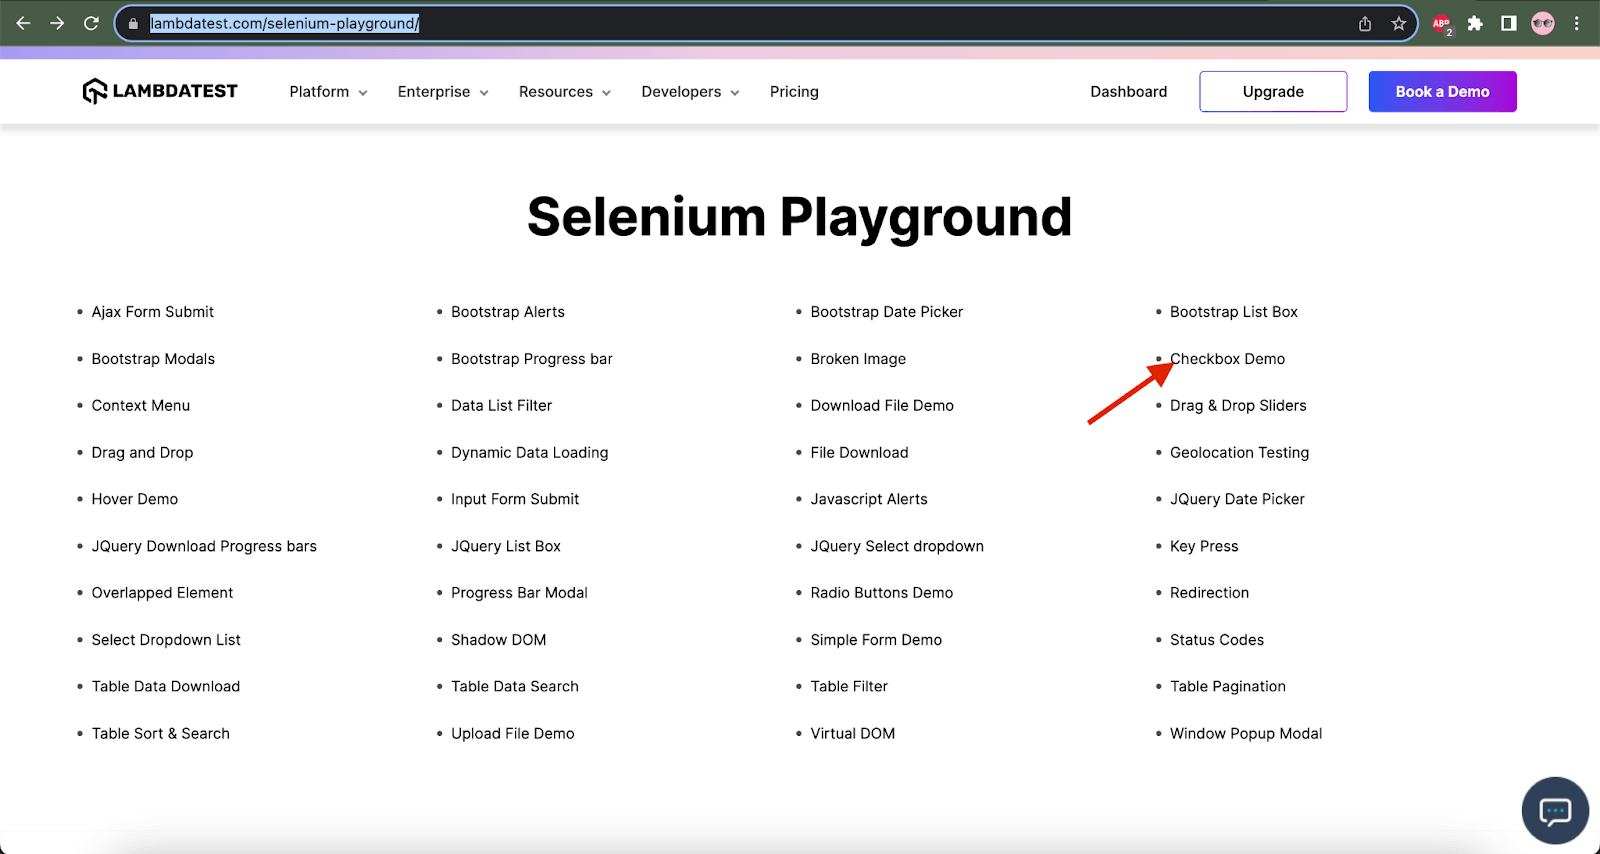 LambdaTest’s Selenium Playground